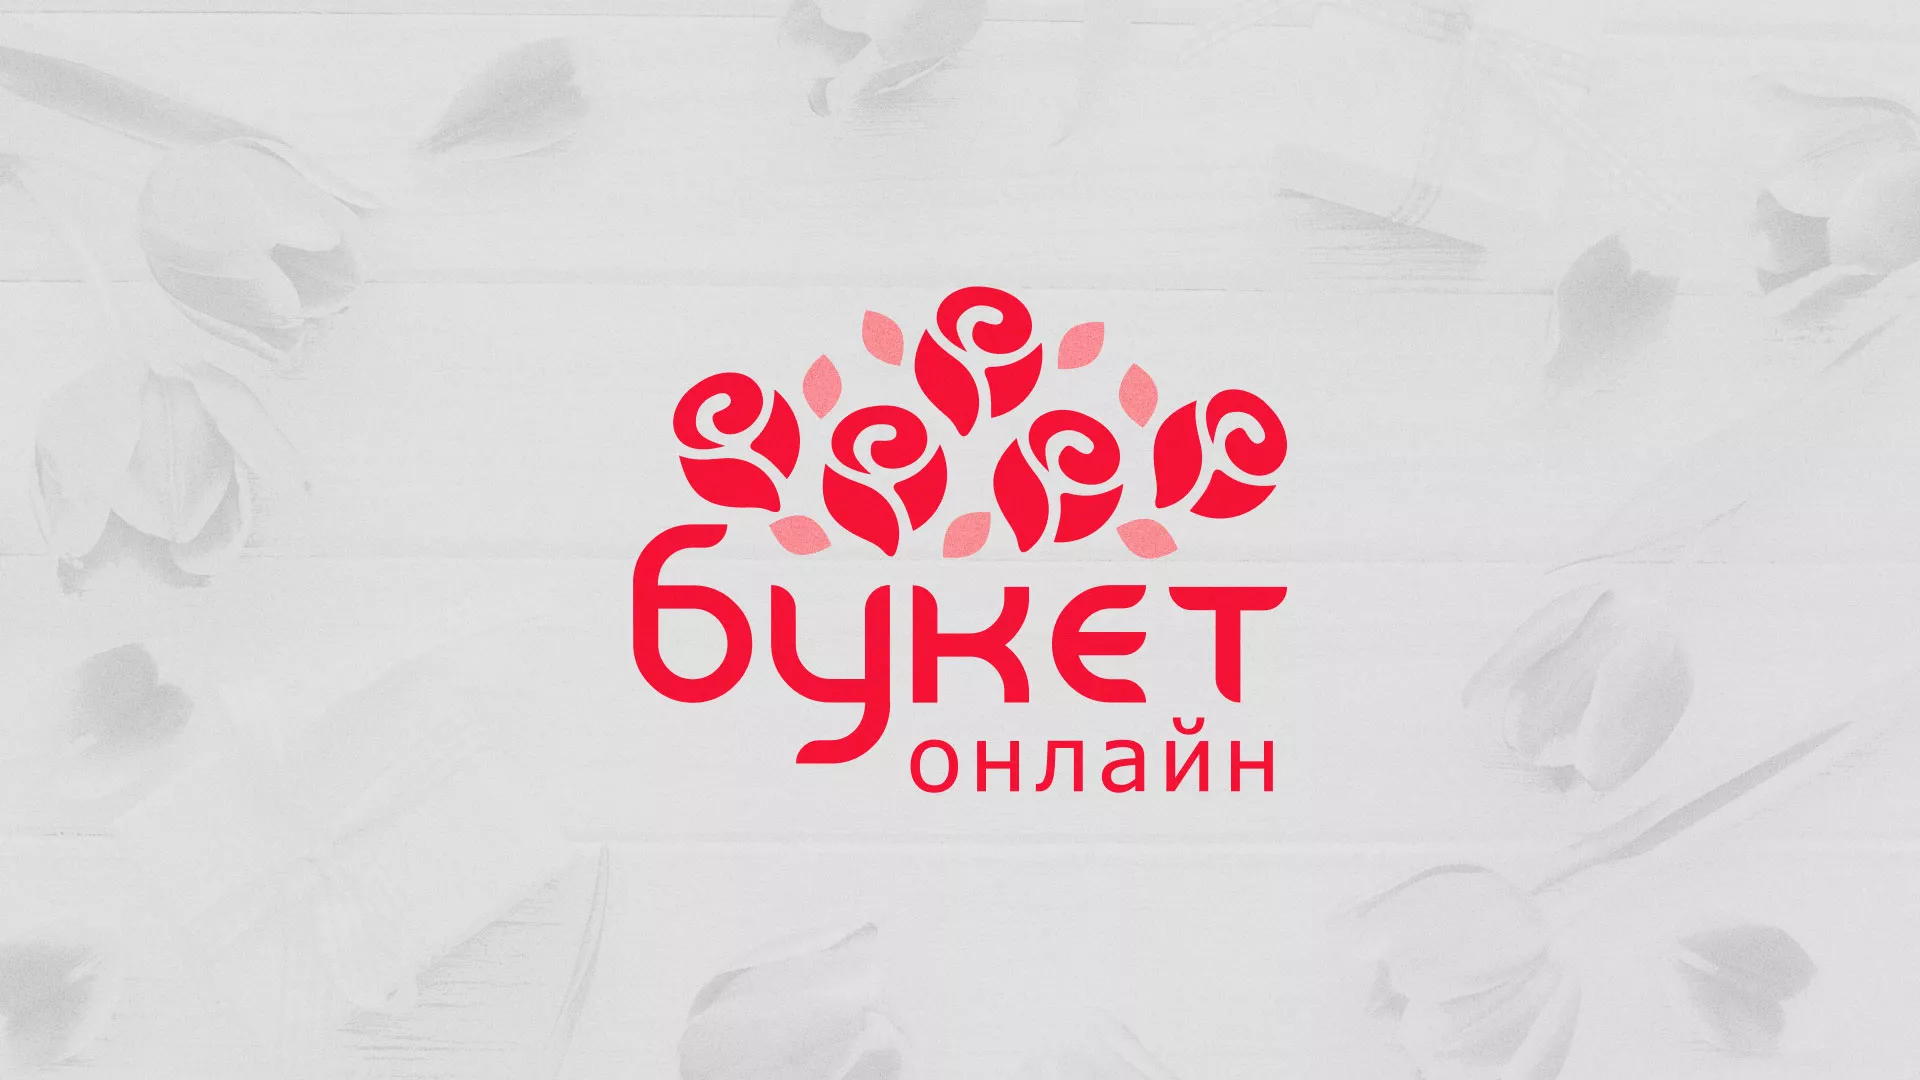 Создание интернет-магазина «Букет-онлайн» по цветам в Переславле-Залесском